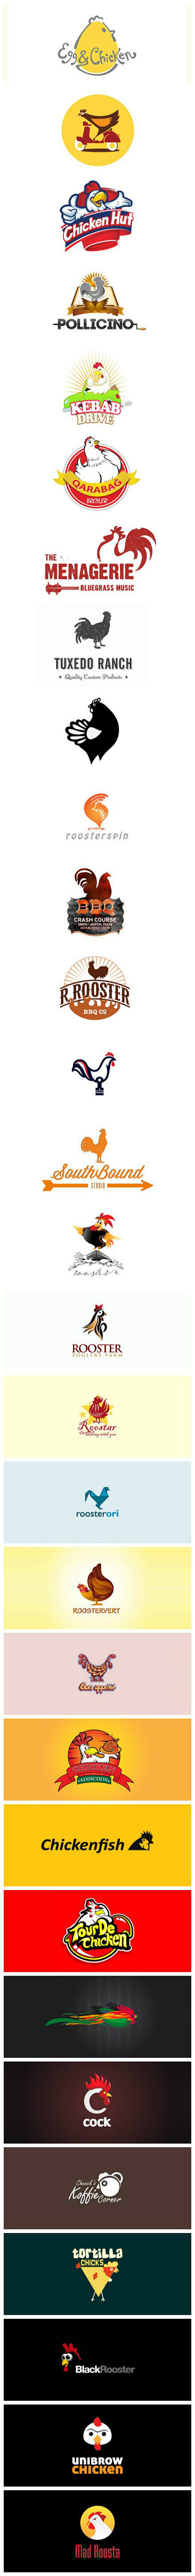 以鸡为主题的创意Logo设计 。

